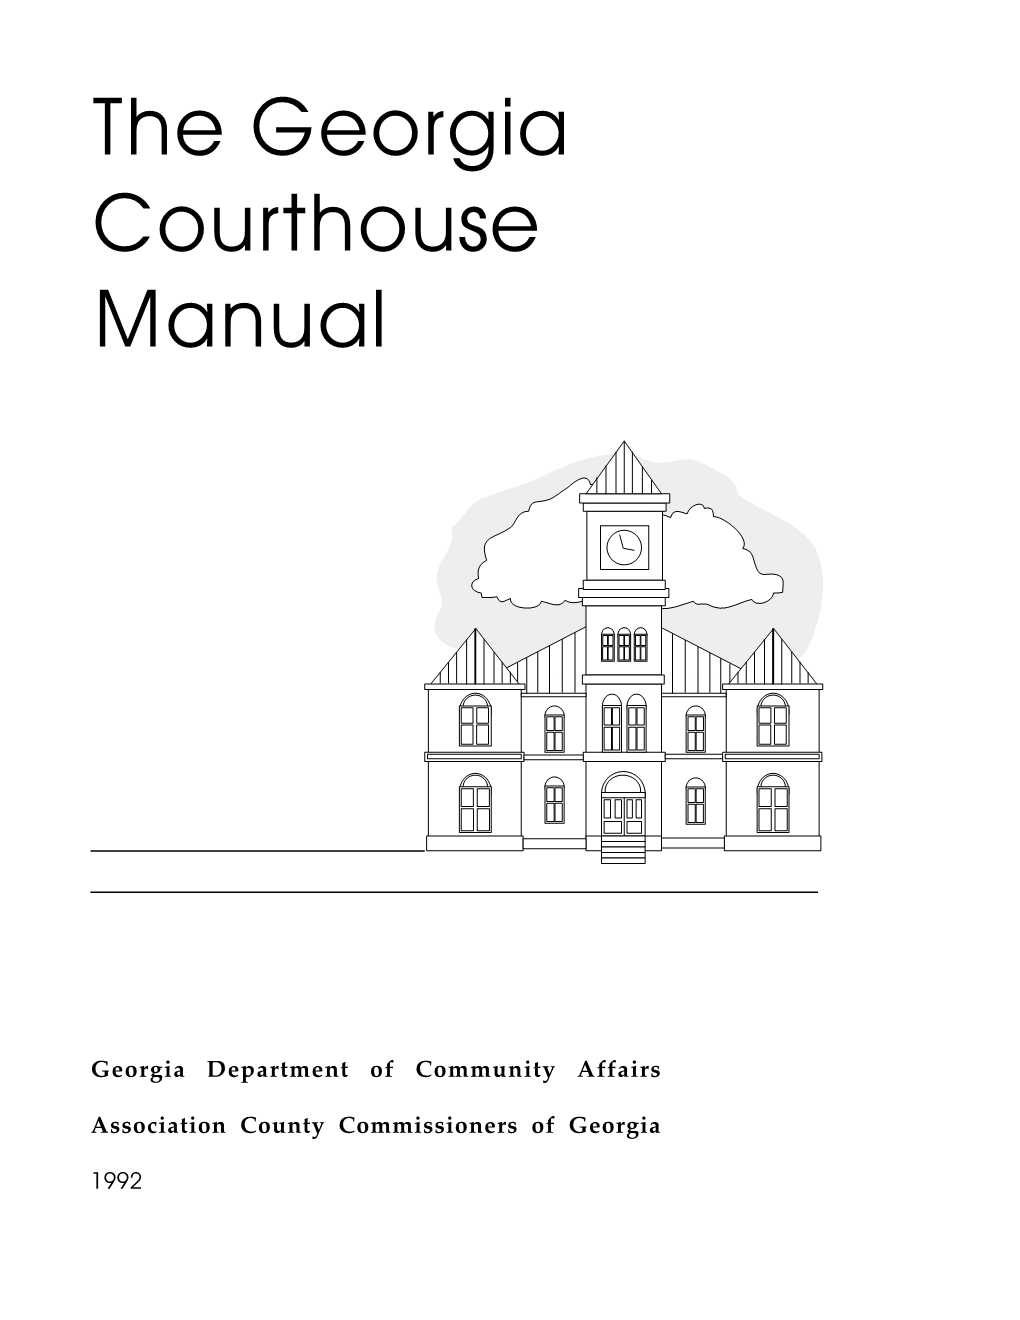 The Georgia Courthouse Manual